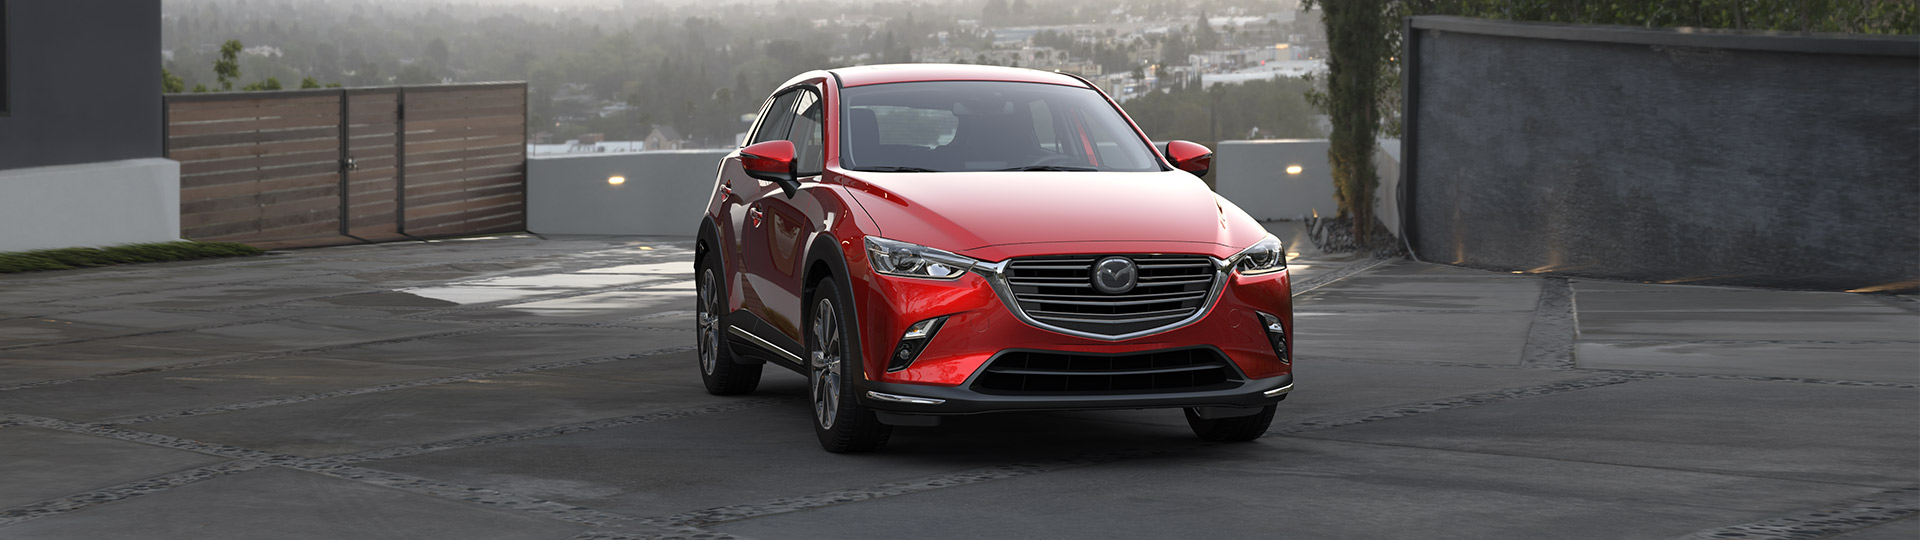 Voici les prix et les caractéristiques techniques du Mazda CX-3 2019 de Mazda Trois-Rivières!